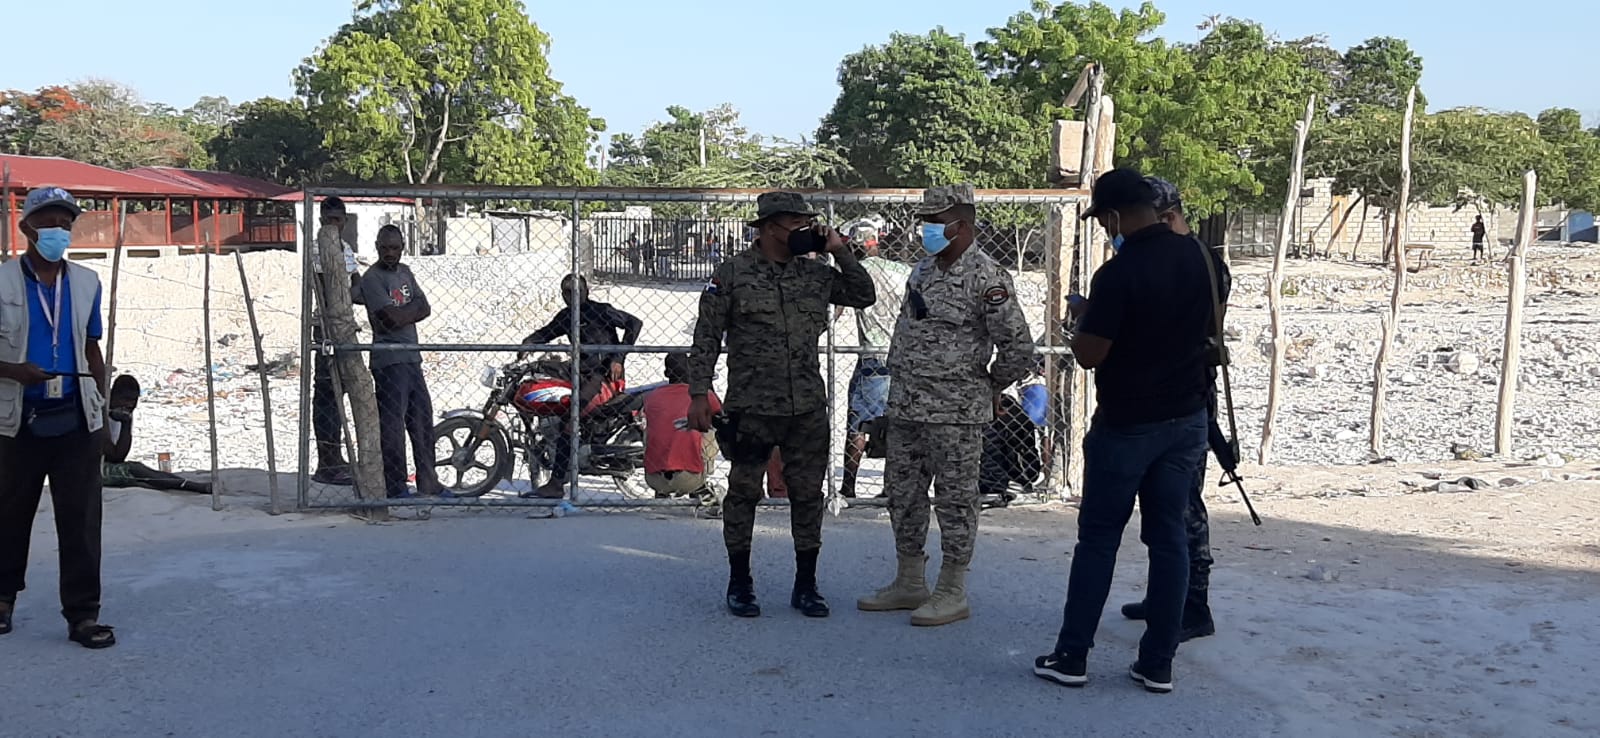 Impiden paso en la frontera entre Dominicana y Haití tras asesinato del presidente Jovenel Moïse ...